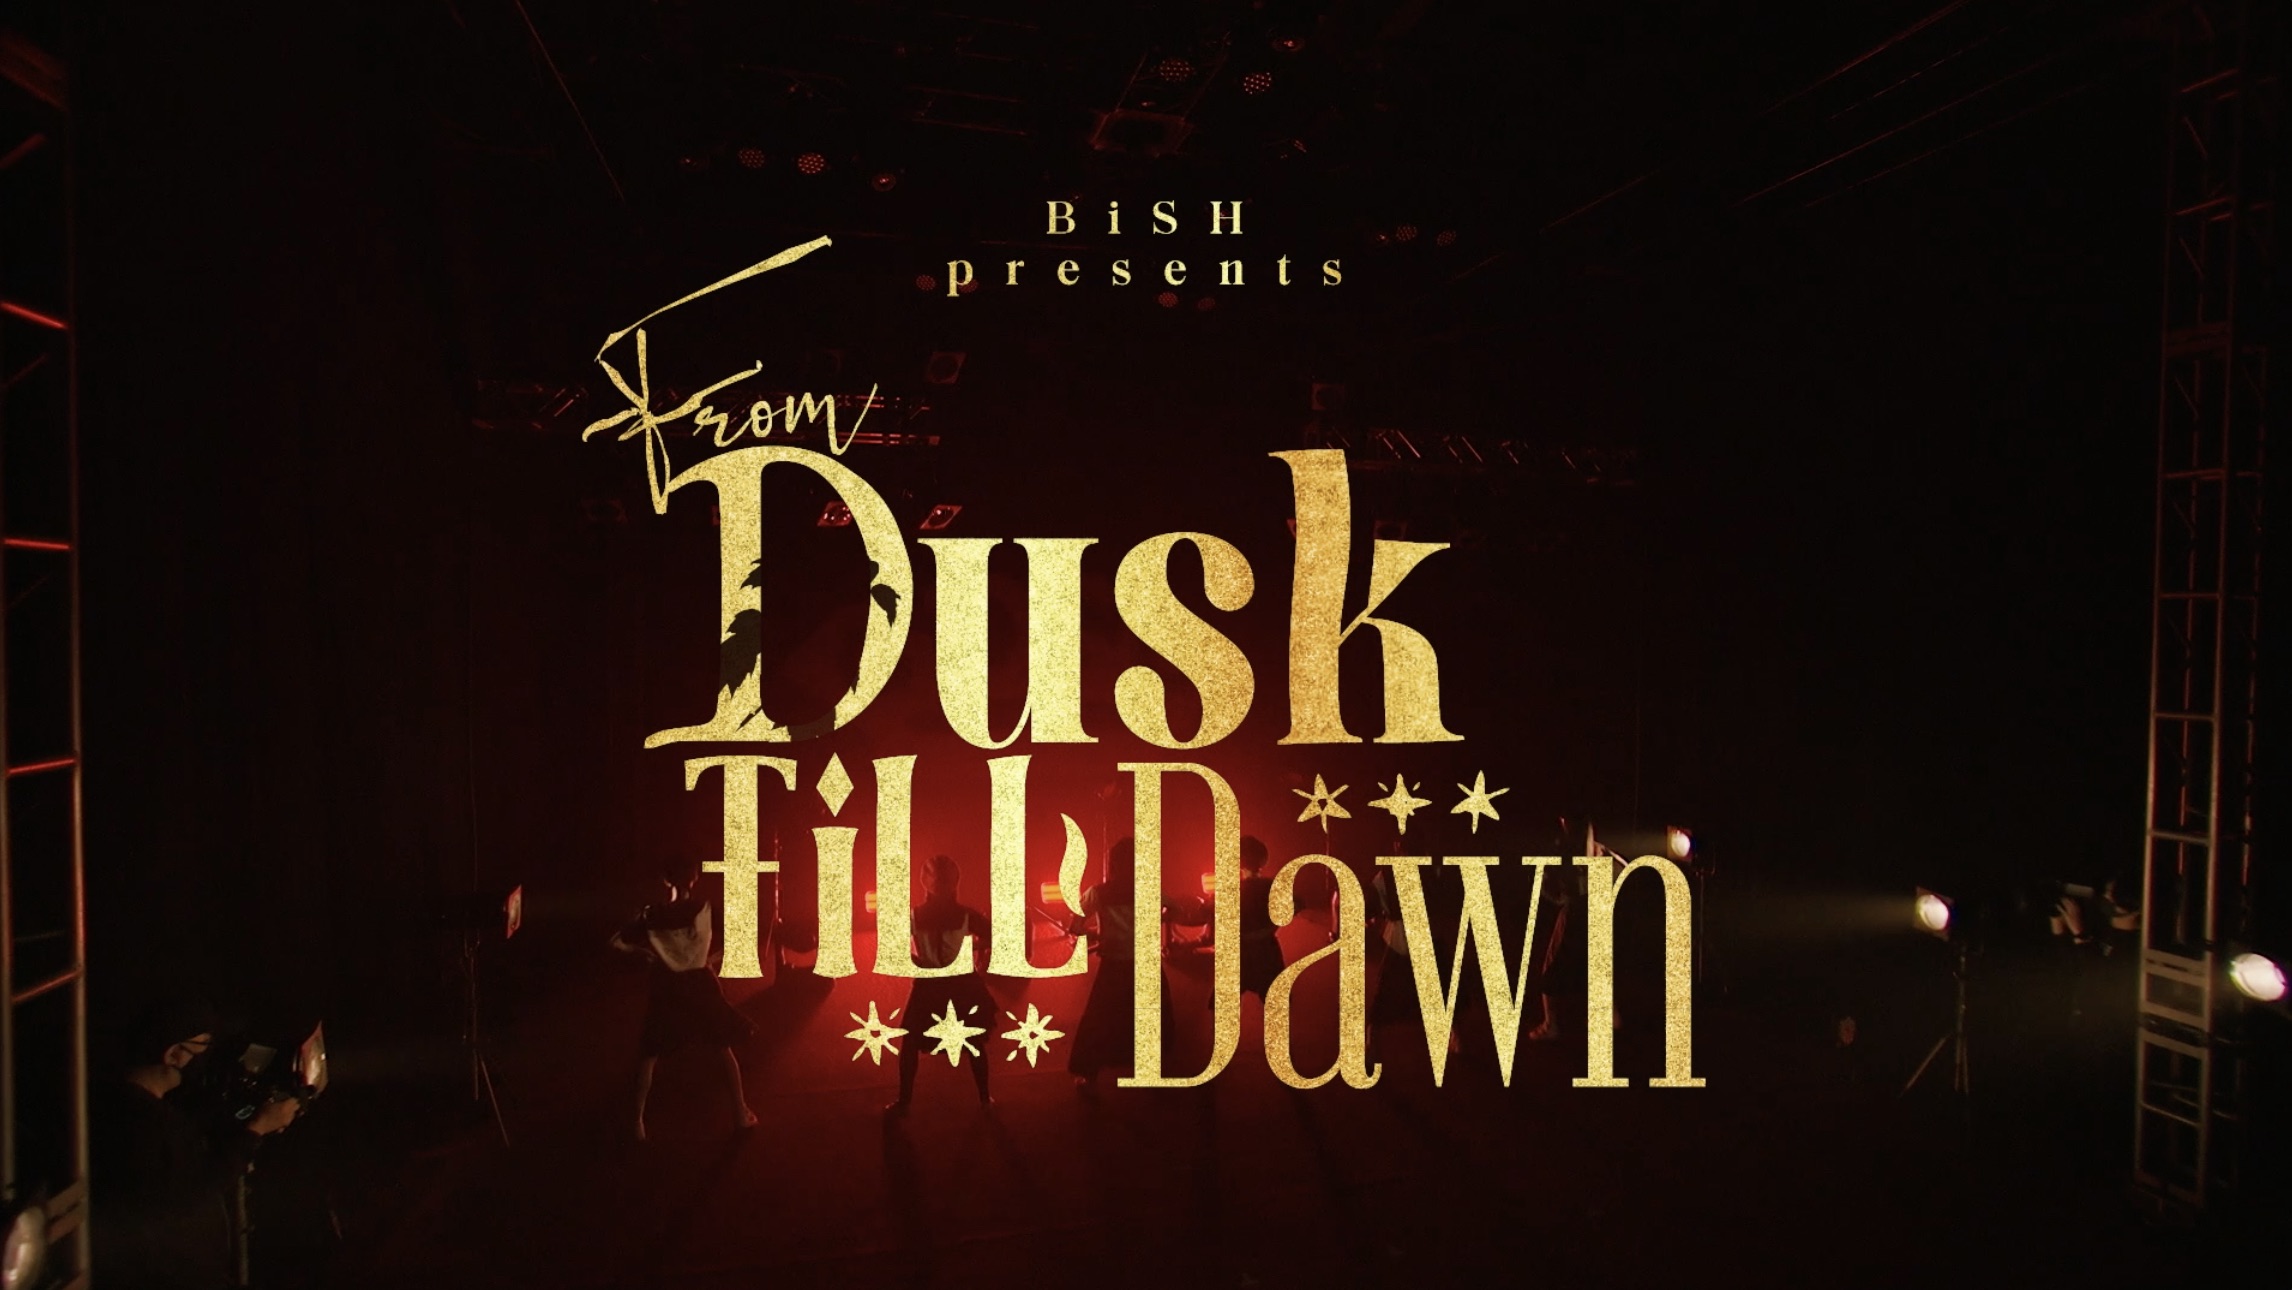 人気沸騰】 BiSH presents FROM DUSK TiLL DAWN 3broadwaybistro.com